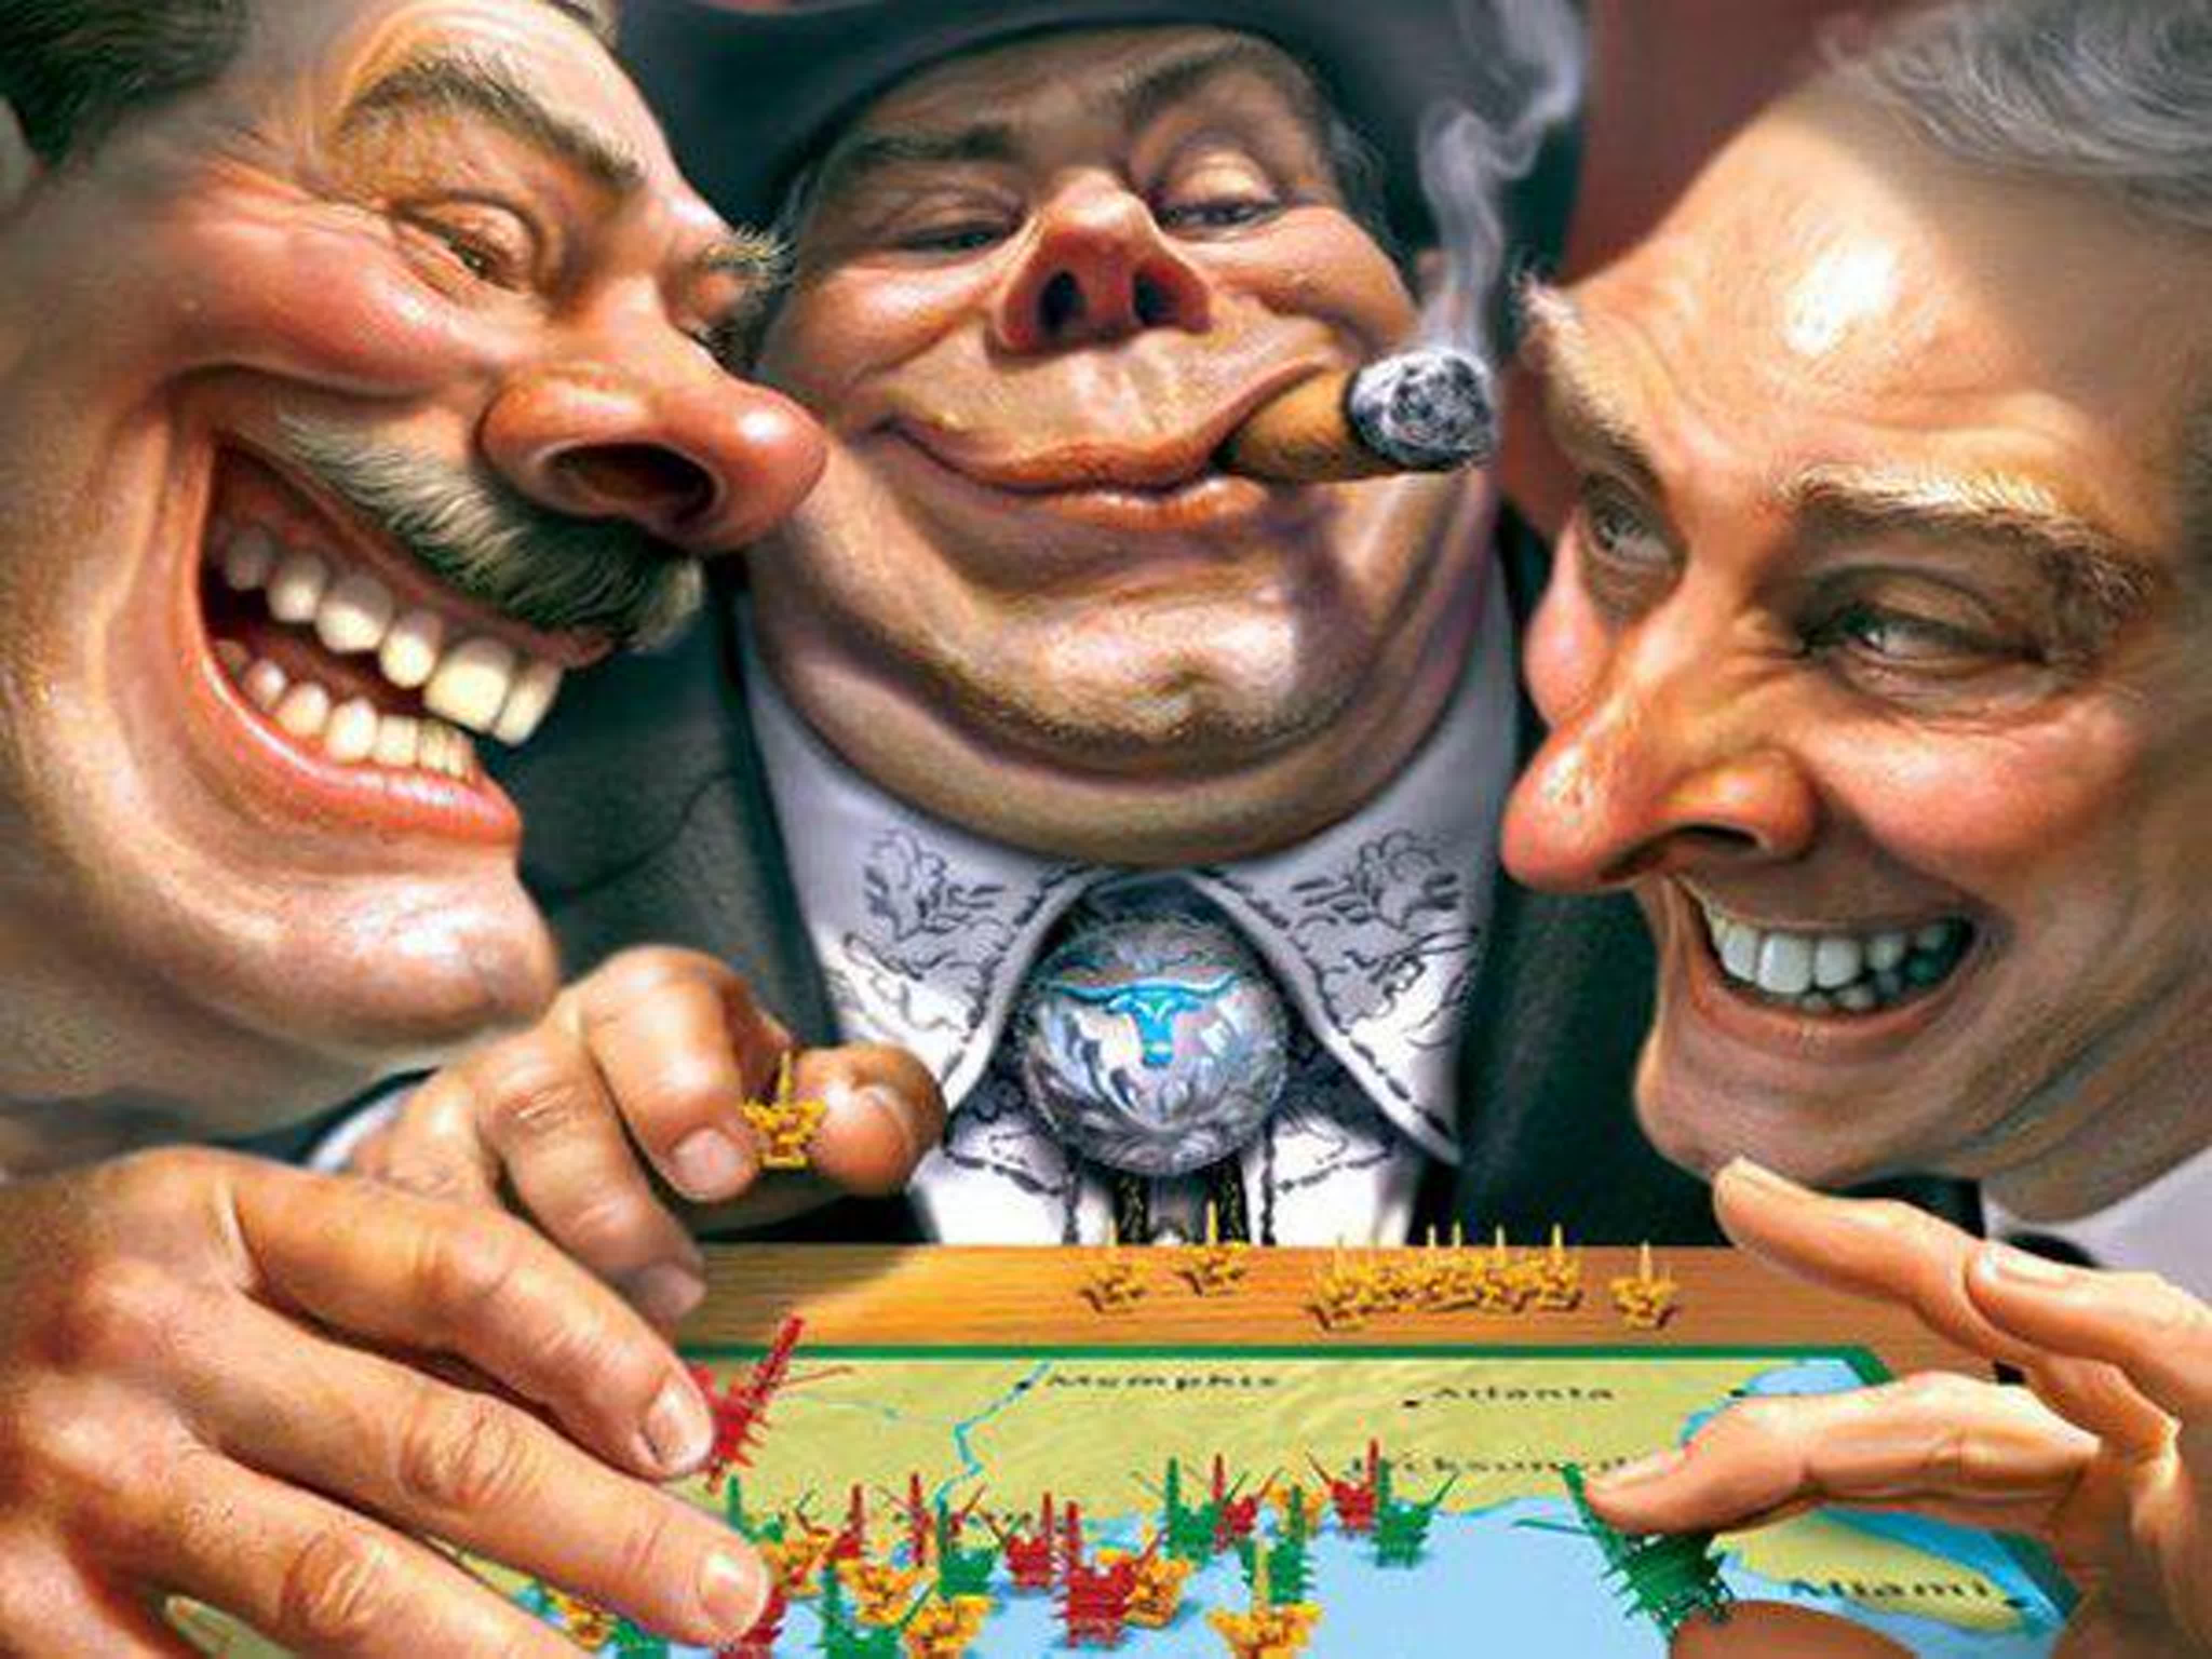 Второй человек государства. Богатый карикатура. Карикатура мировое правительство. Шаржи на политиков. Карикатуры на политиков.